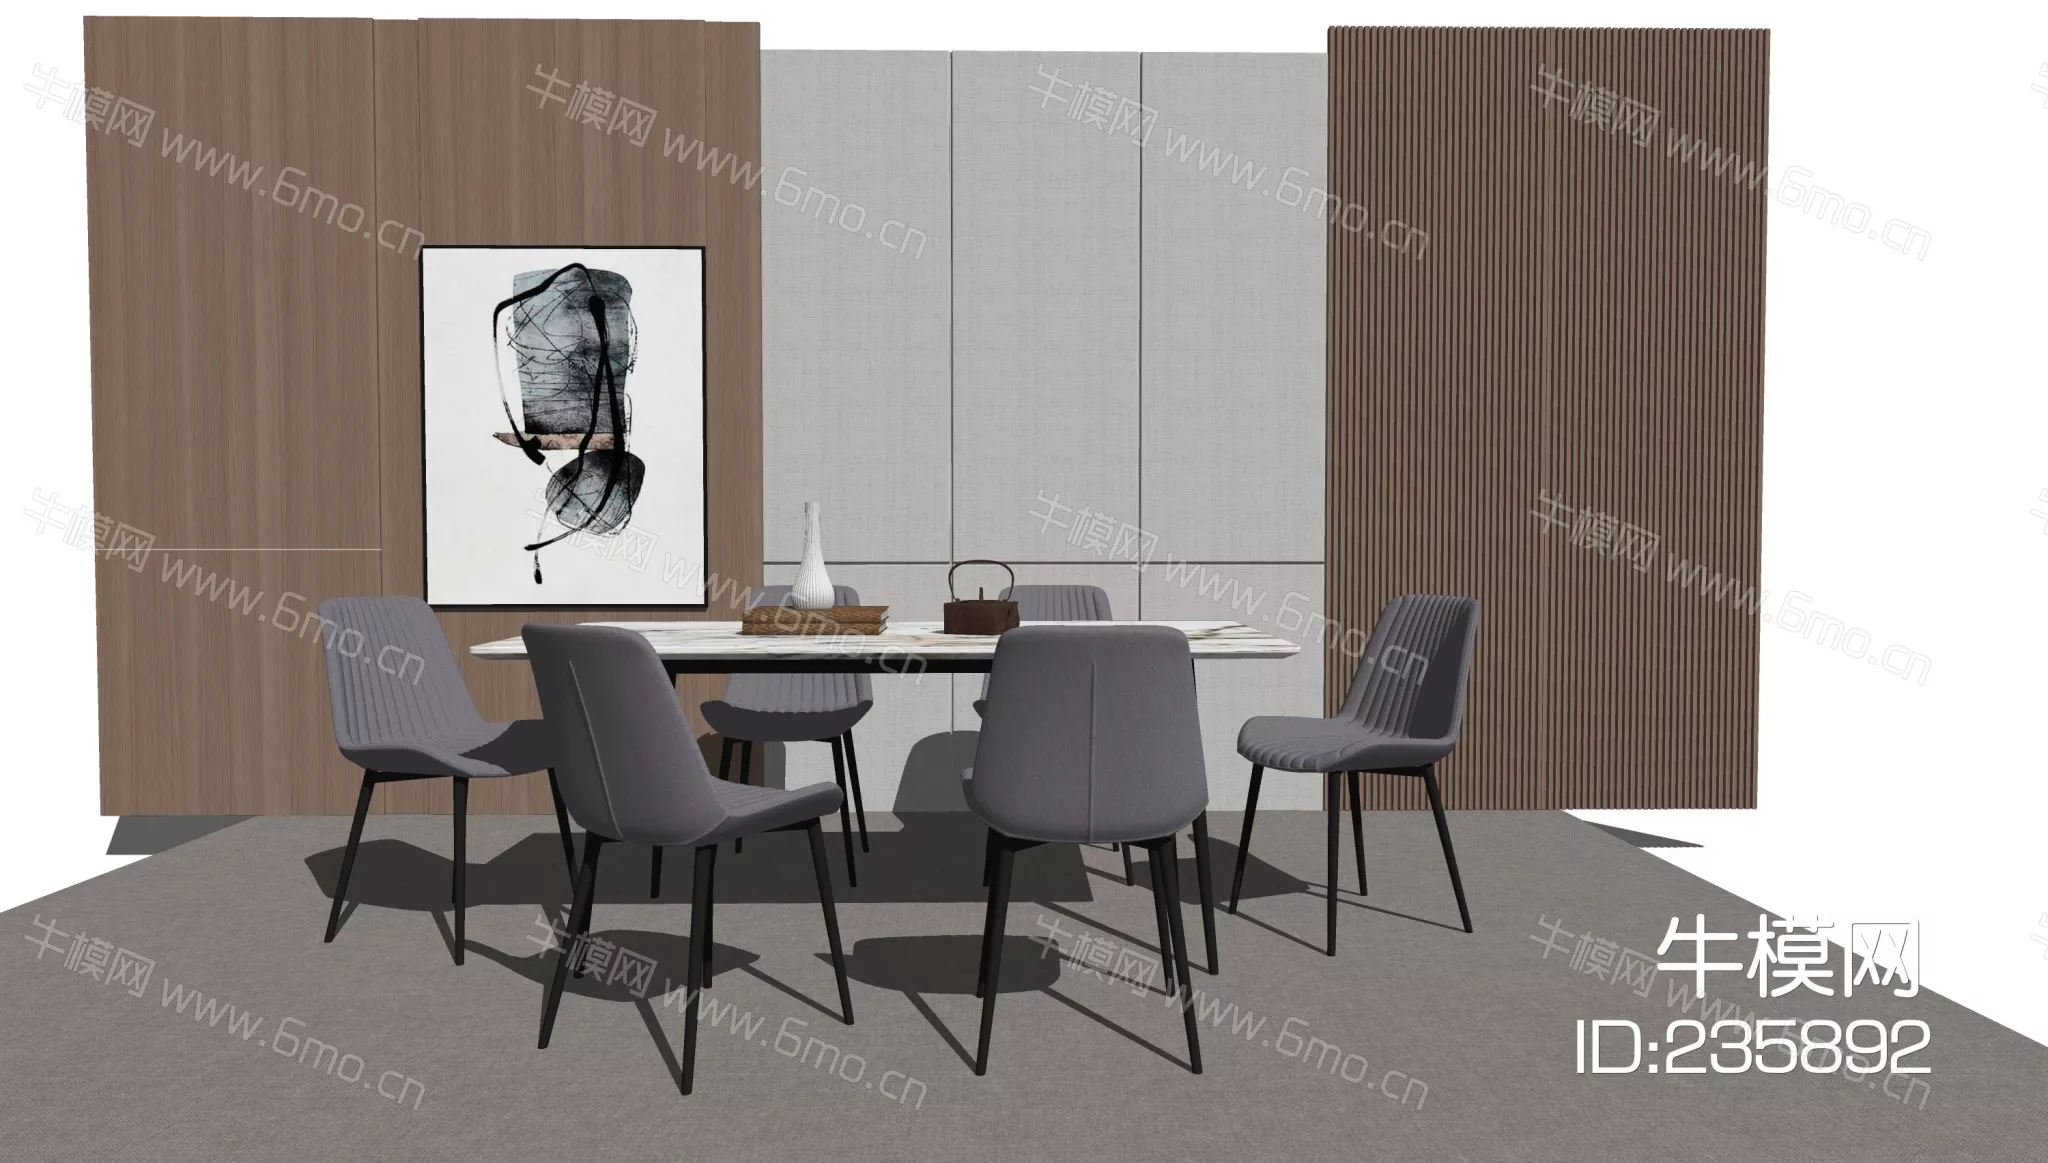 MODERN DINING TABLE SET - SKETCHUP 3D MODEL - ENSCAPE - 235892